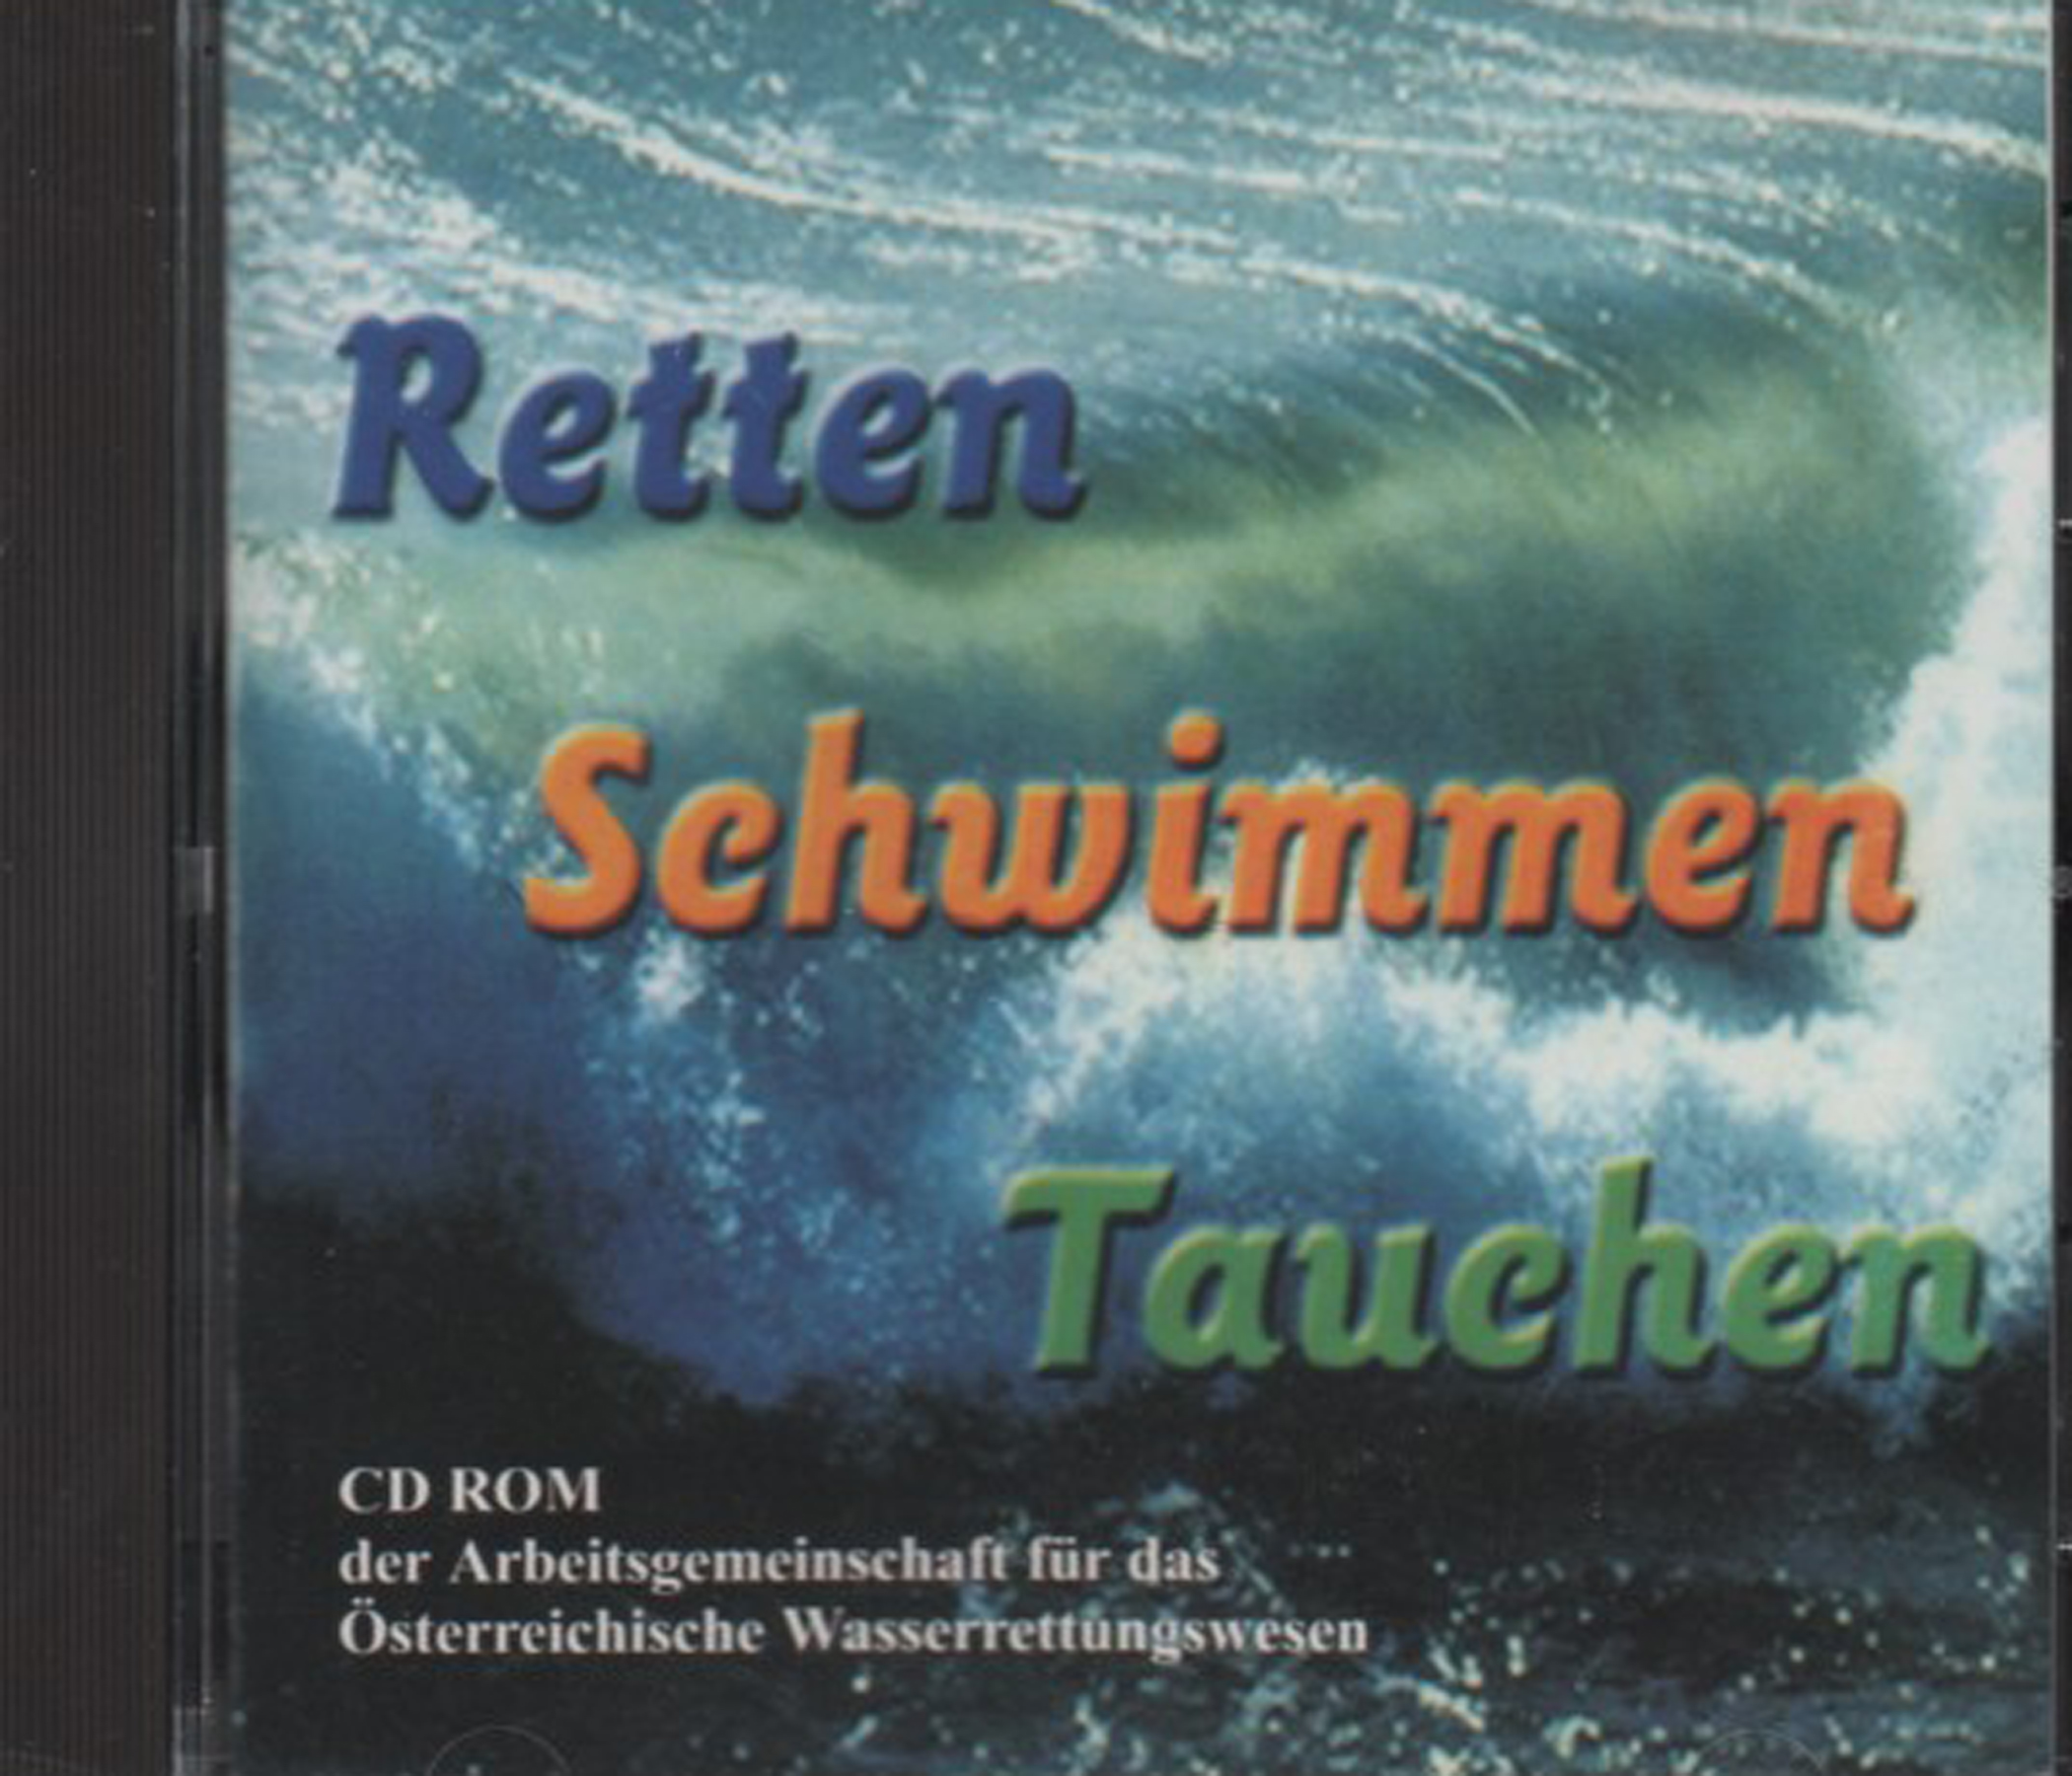 CD "Retten Schwimmen Tauchen"